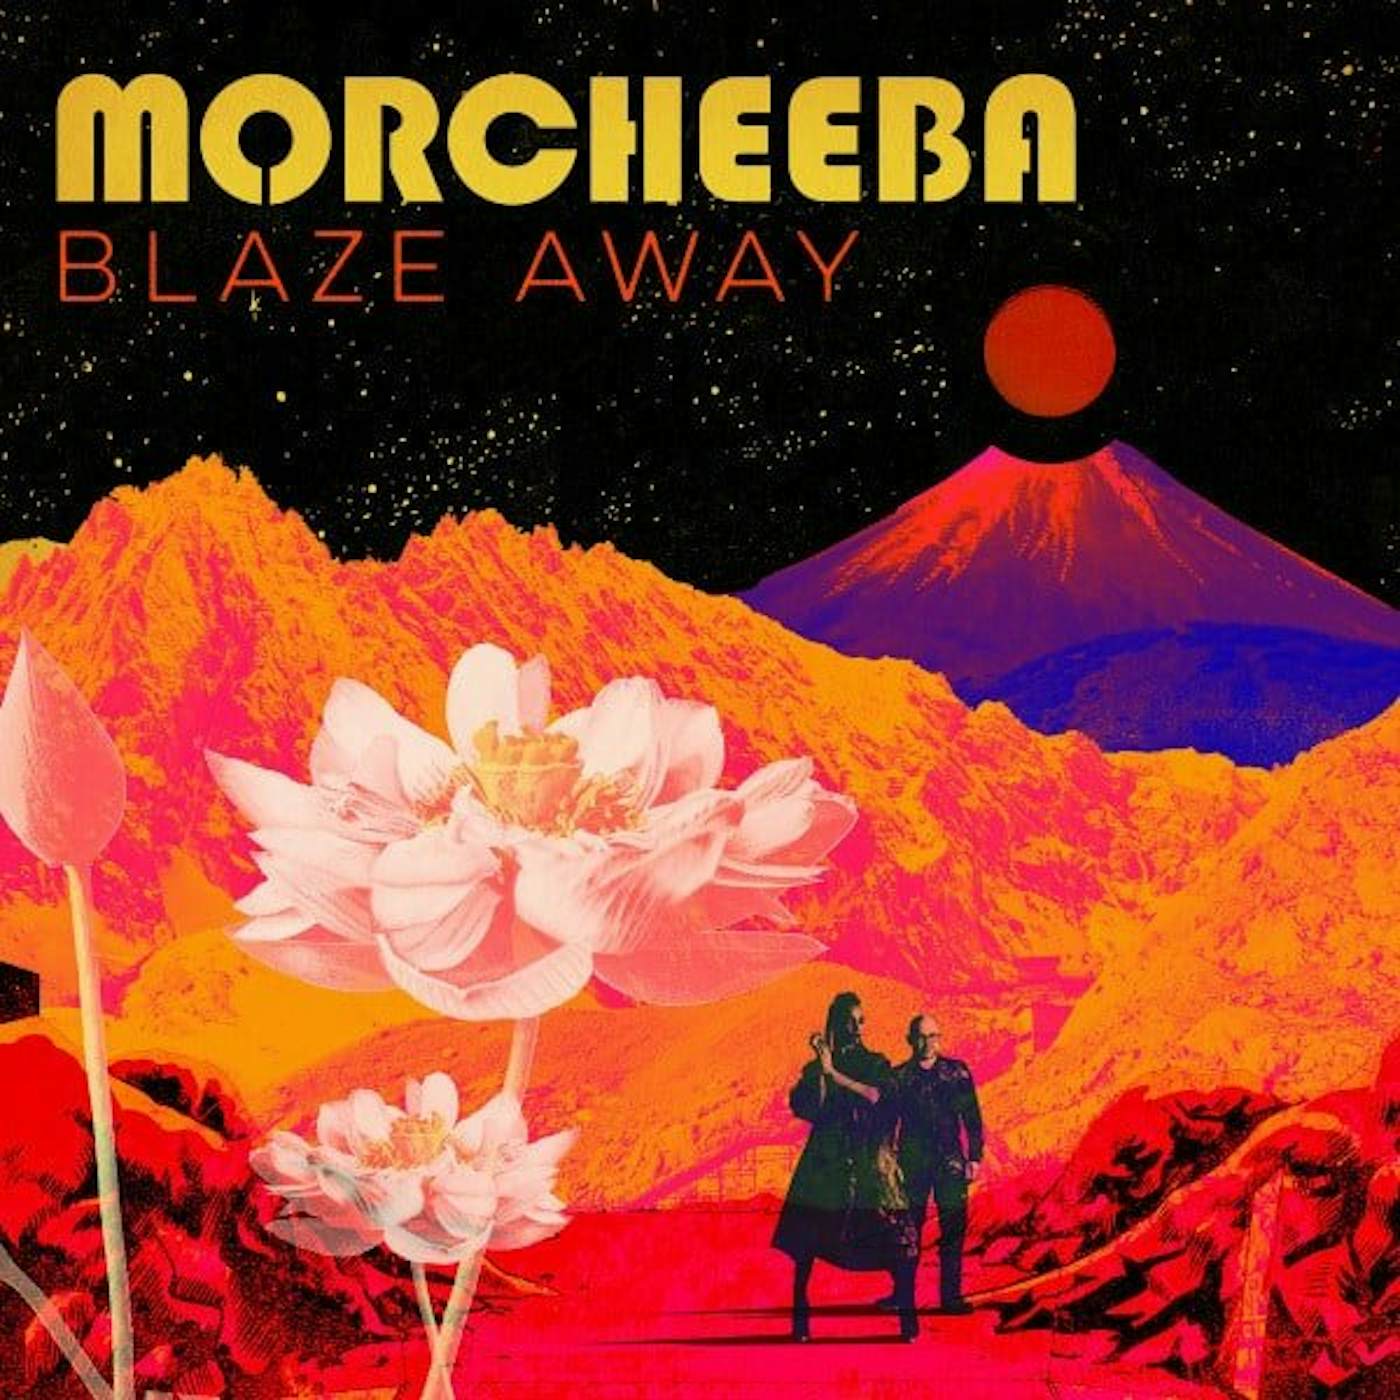 Morcheeba Blaze Away Vinyl Record